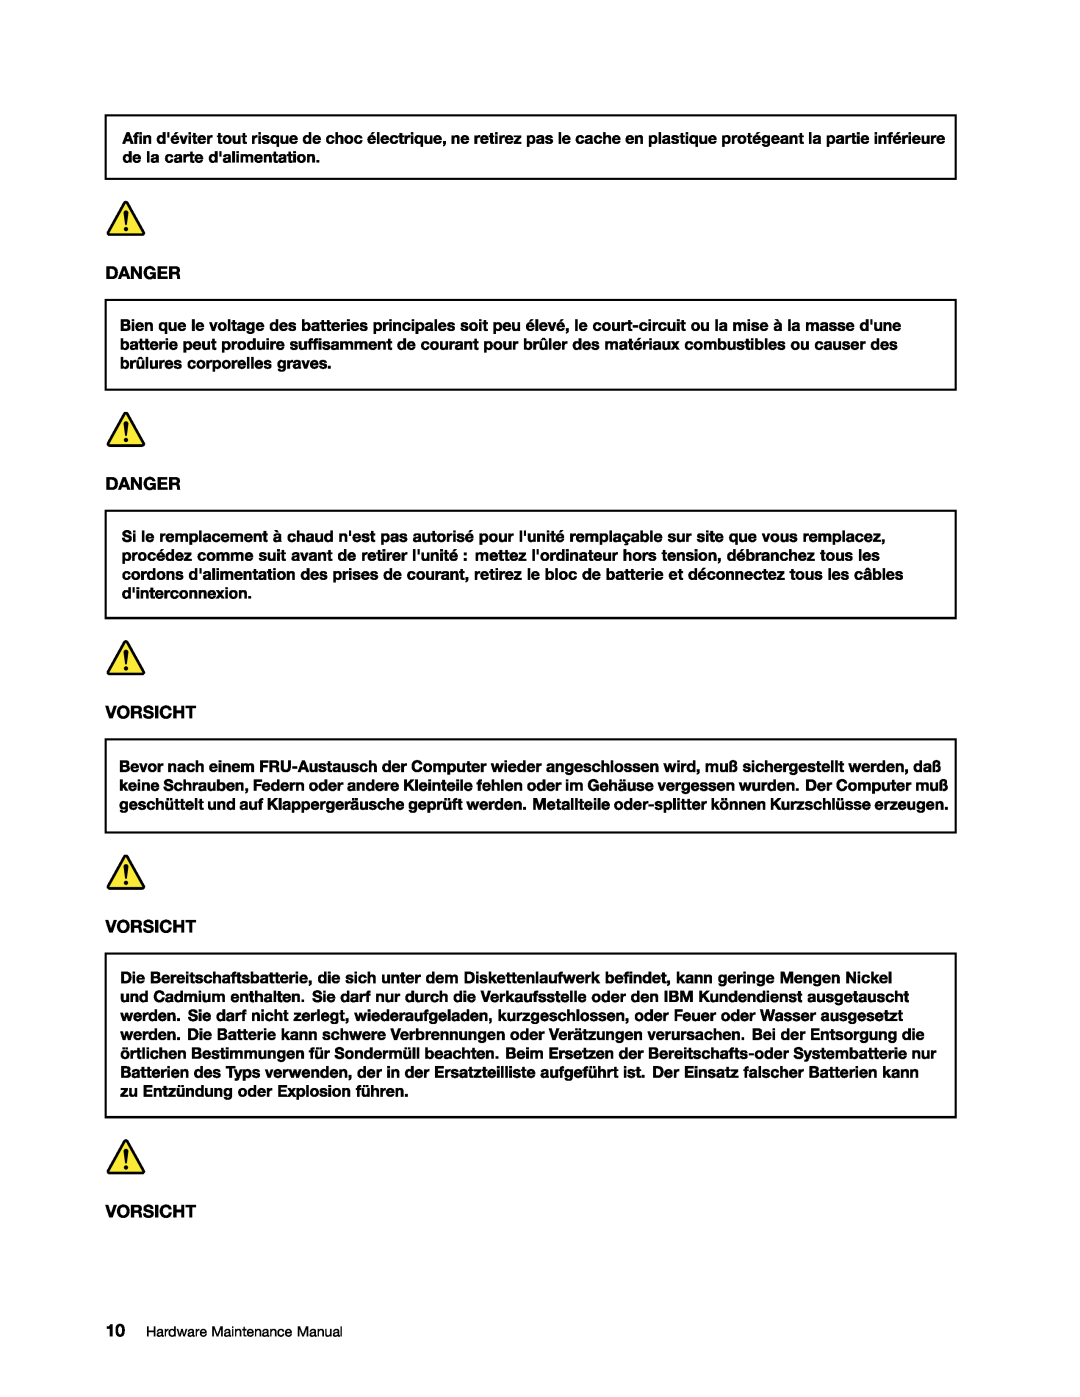 Lenovo E30, E31, EDGE 13 manual Danger Danger Vorsicht Vorsicht Vorsicht, Hardware Maintenance Manual 